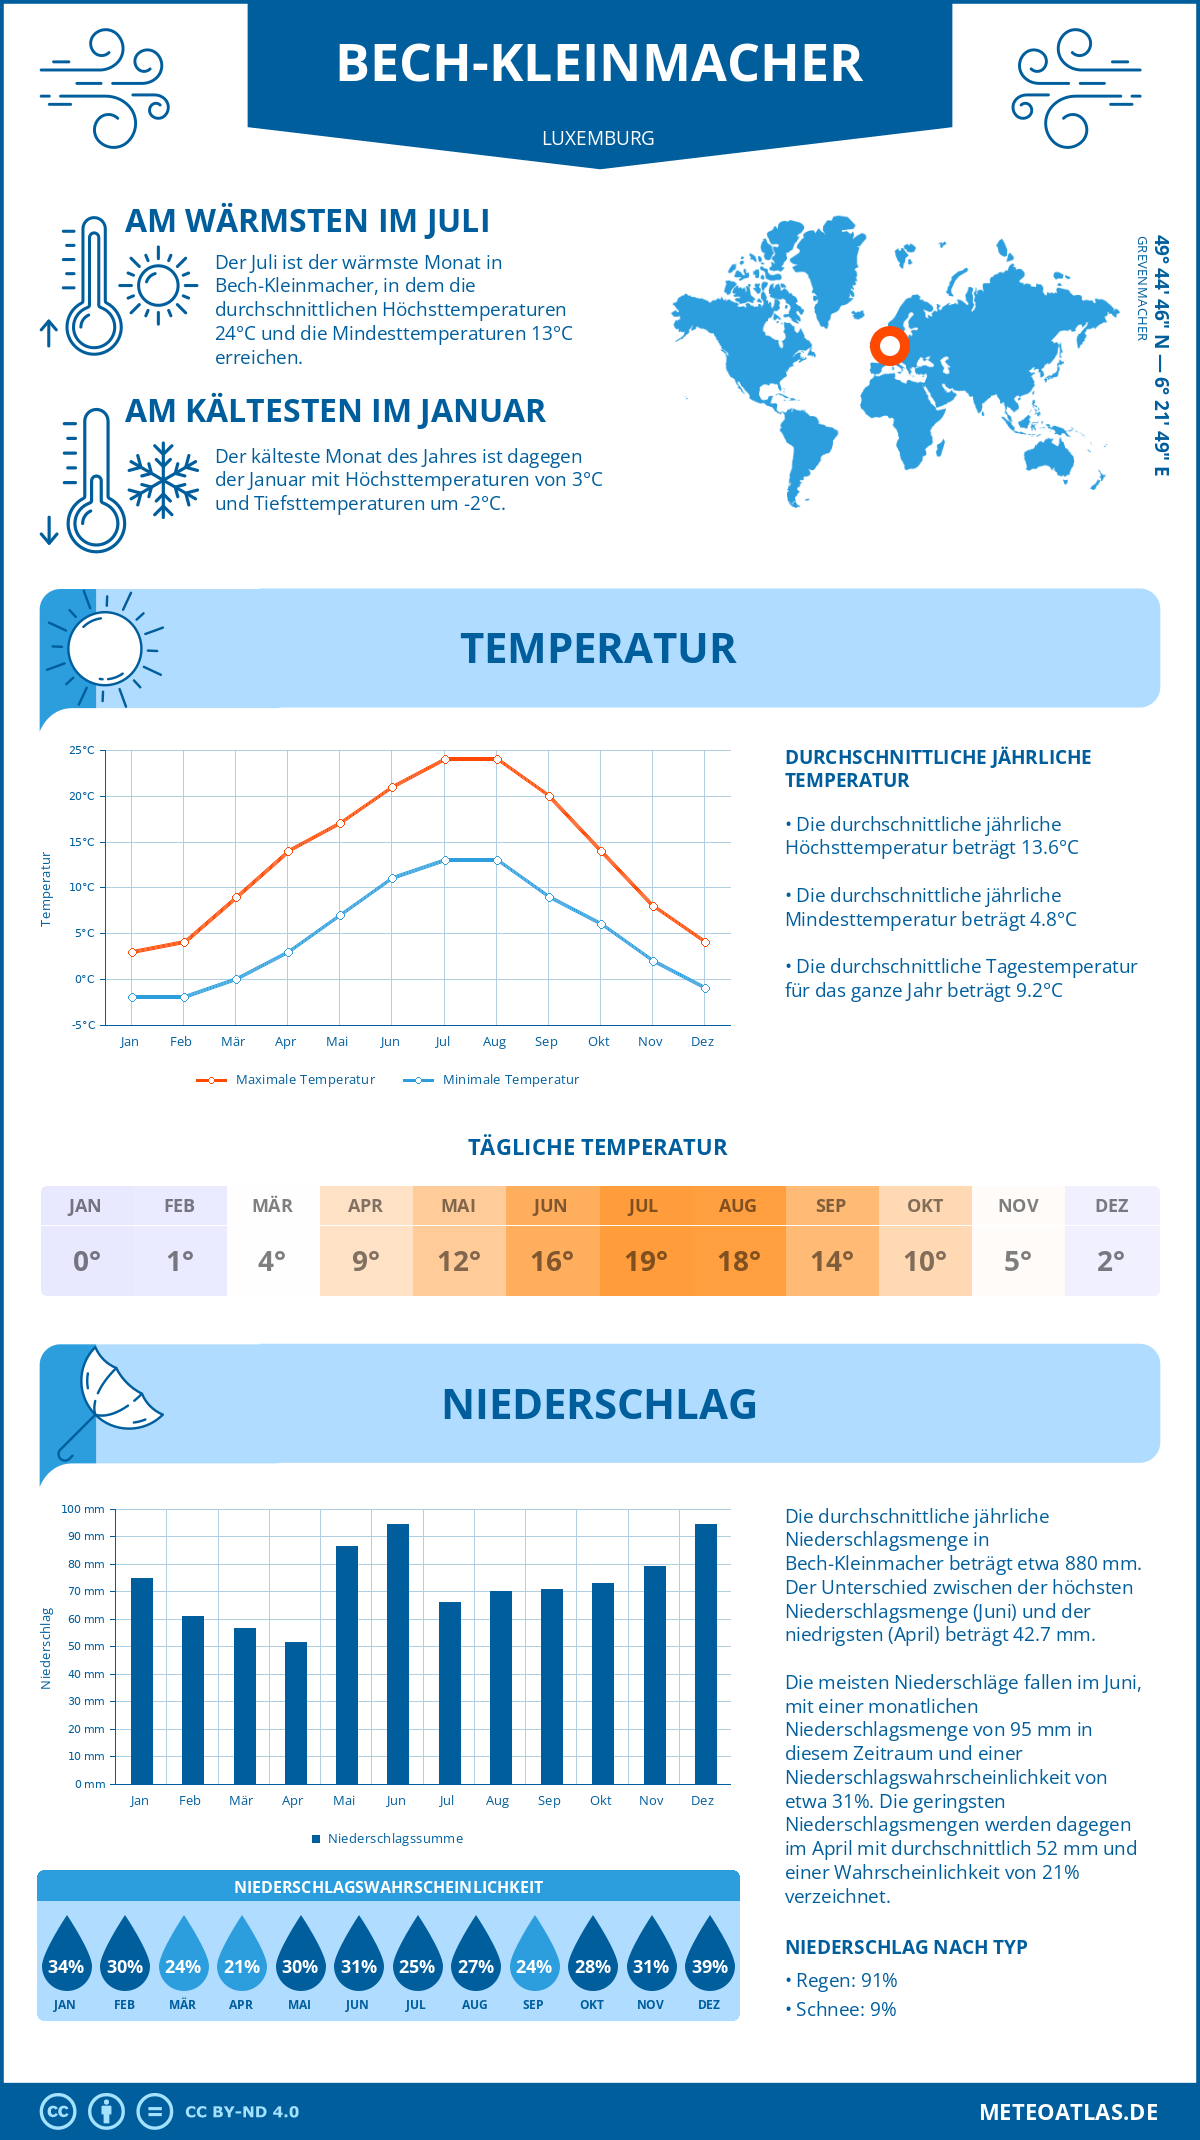 Wetter Bech-Kleinmacher (Luxemburg) - Temperatur und Niederschlag